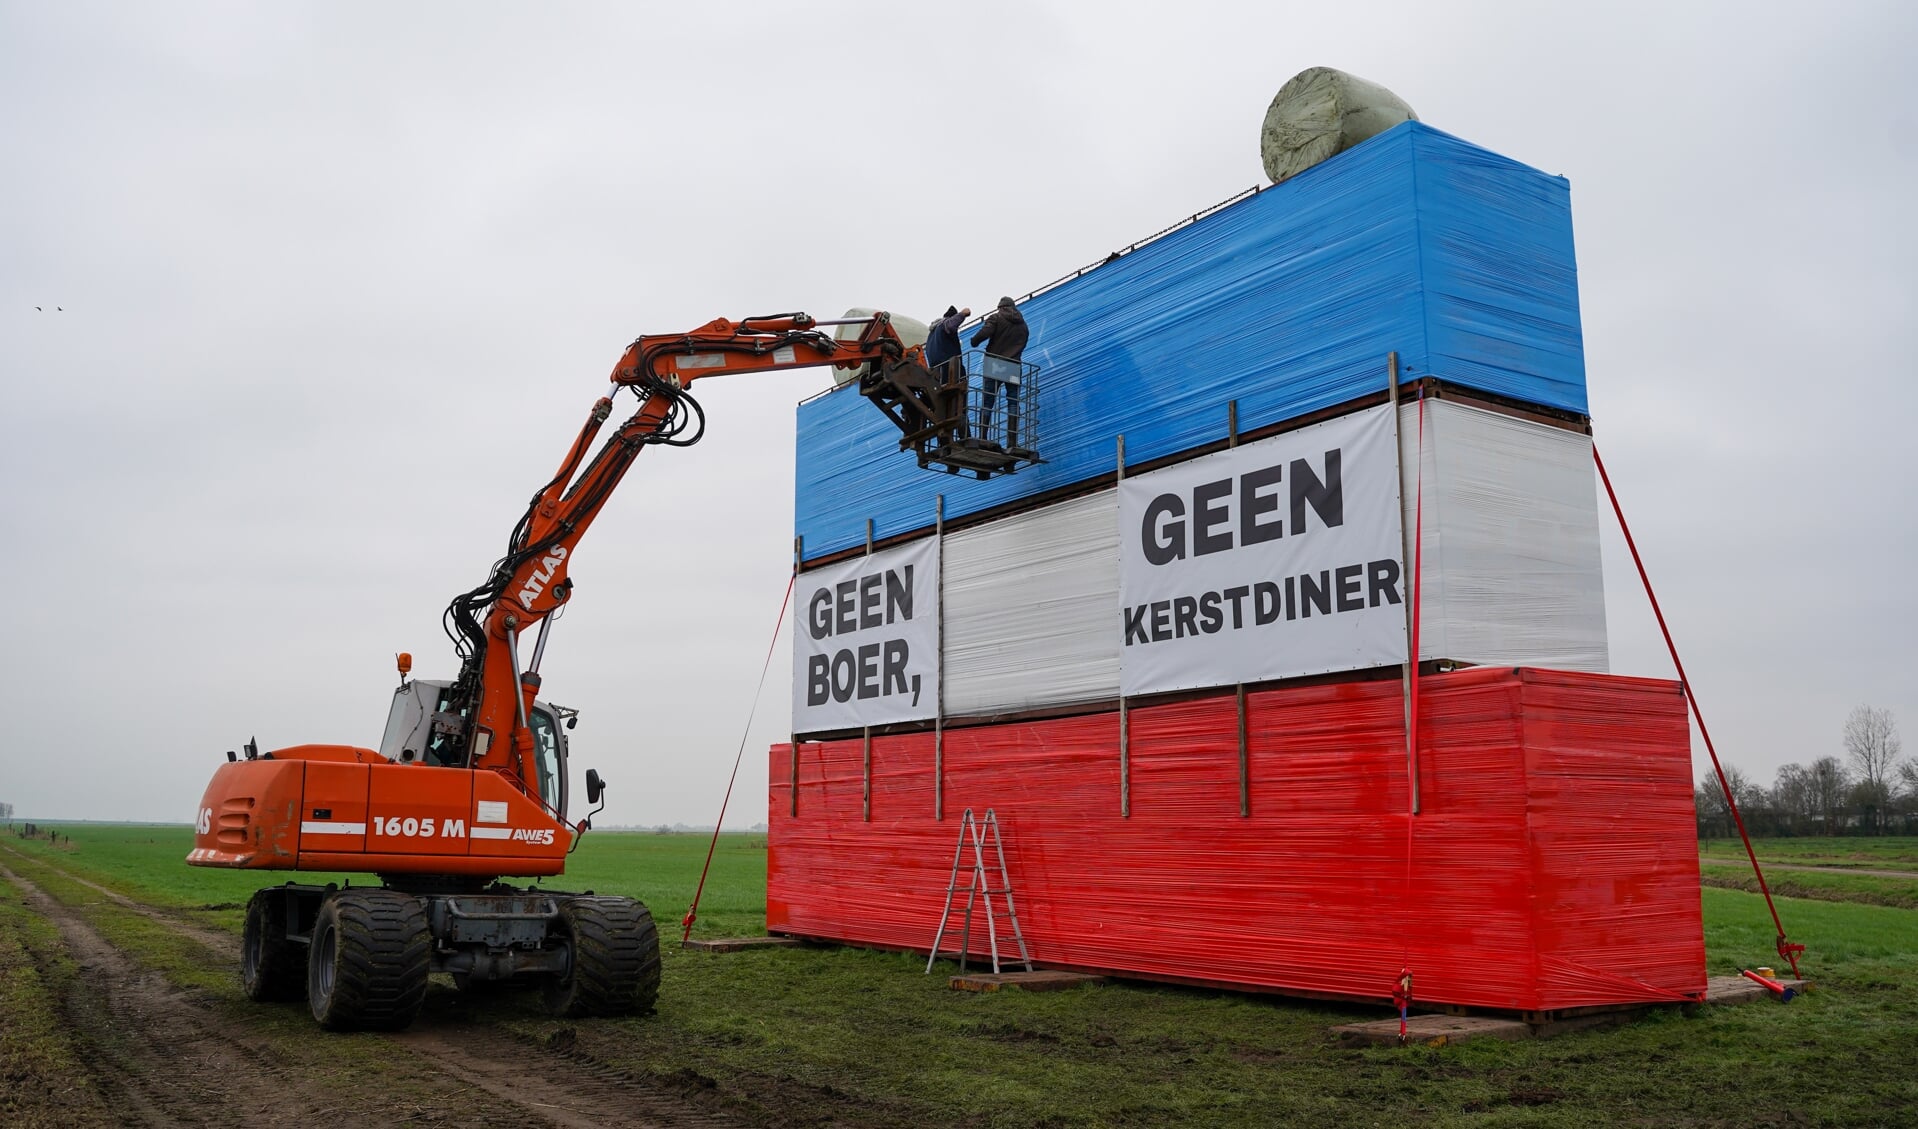 Langs de snelweg A28 tussen Putten en Nijkerk is sinds zaterdag een nieuwe noodkreet te zien van Puttense boeren. 